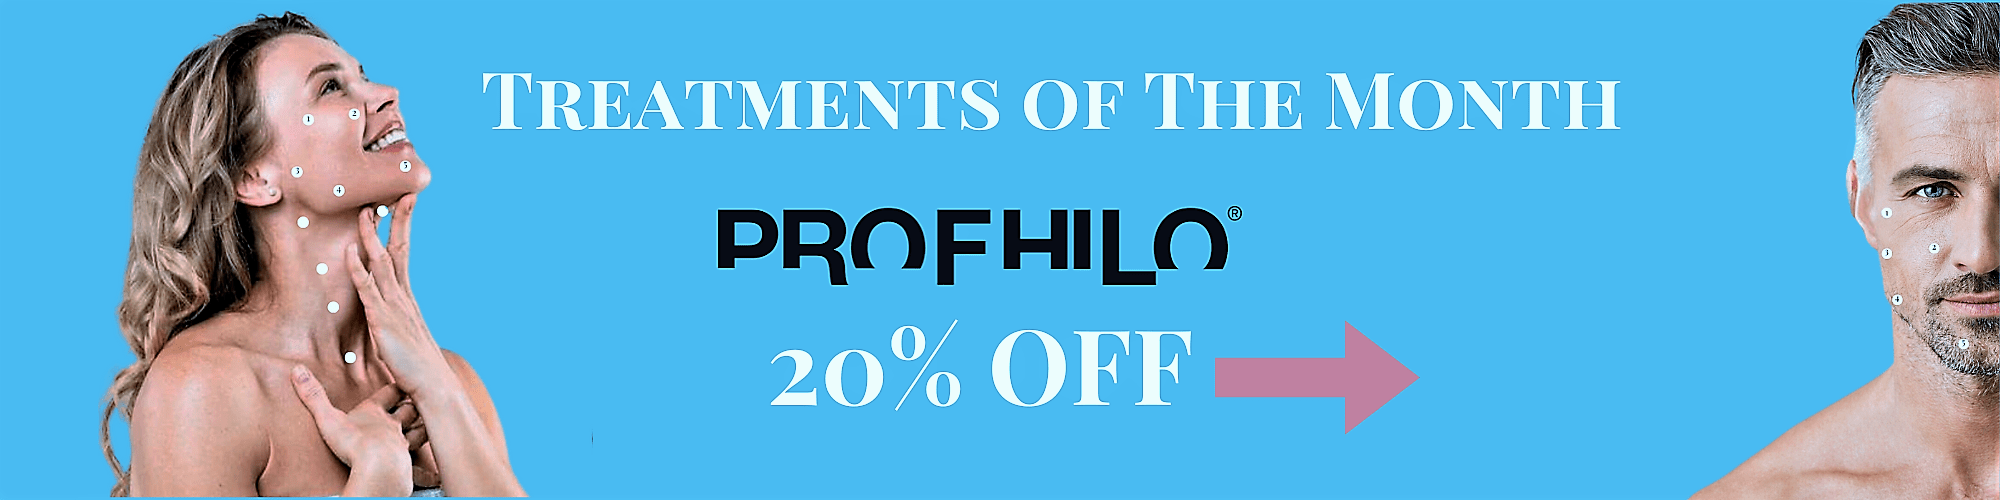 20% Off Profhilo Treatment